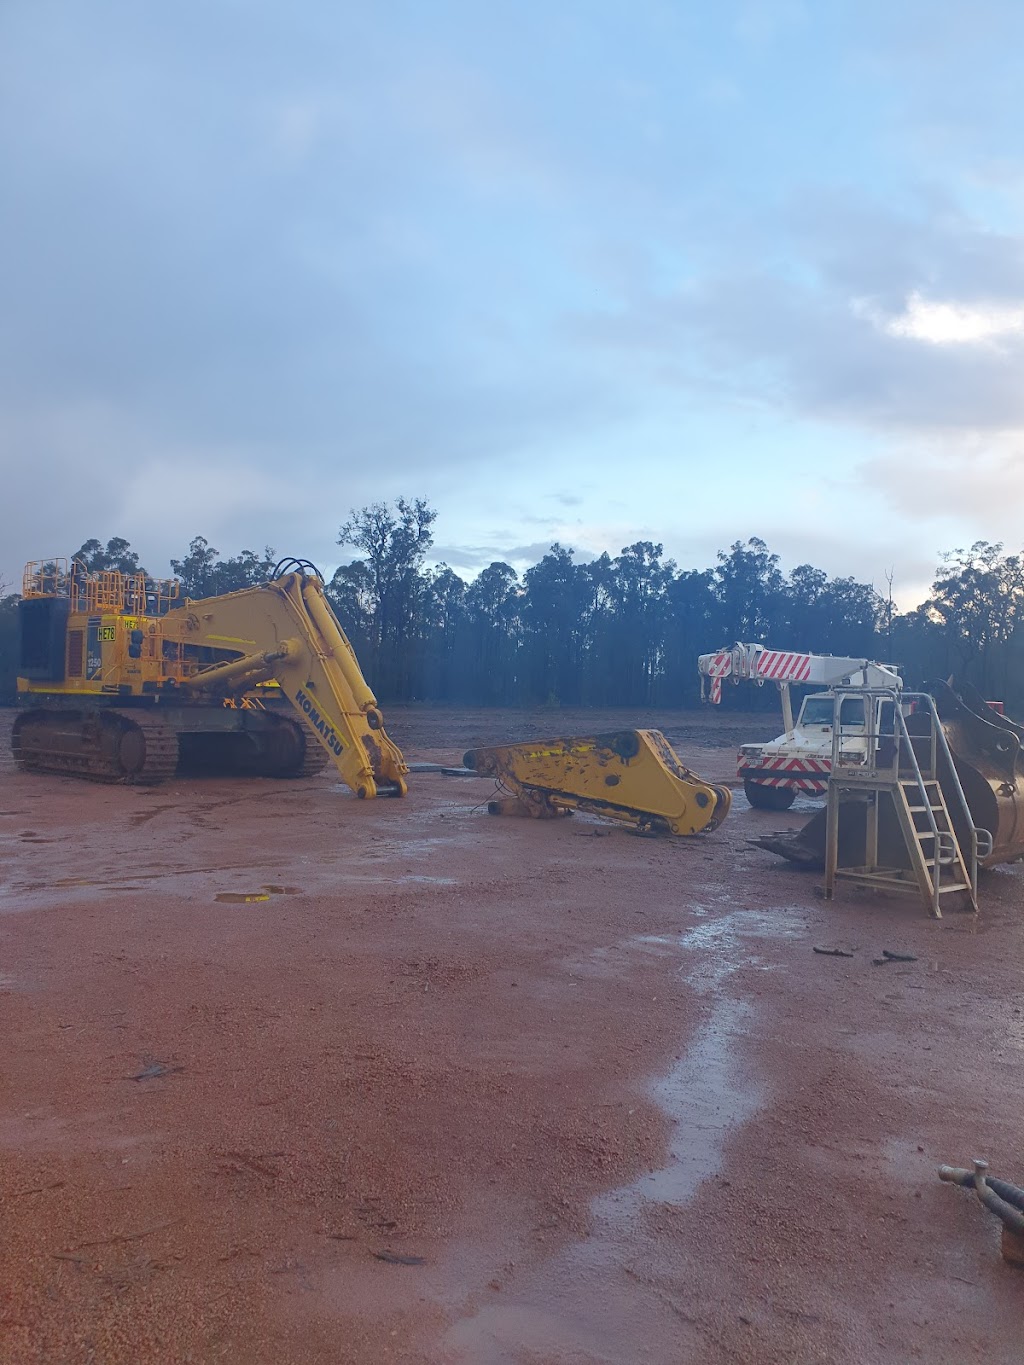 Westoz Equipment Repairs | 33 Sunset Cir, Pinjarra WA 6208, Australia | Phone: 0424 551 039